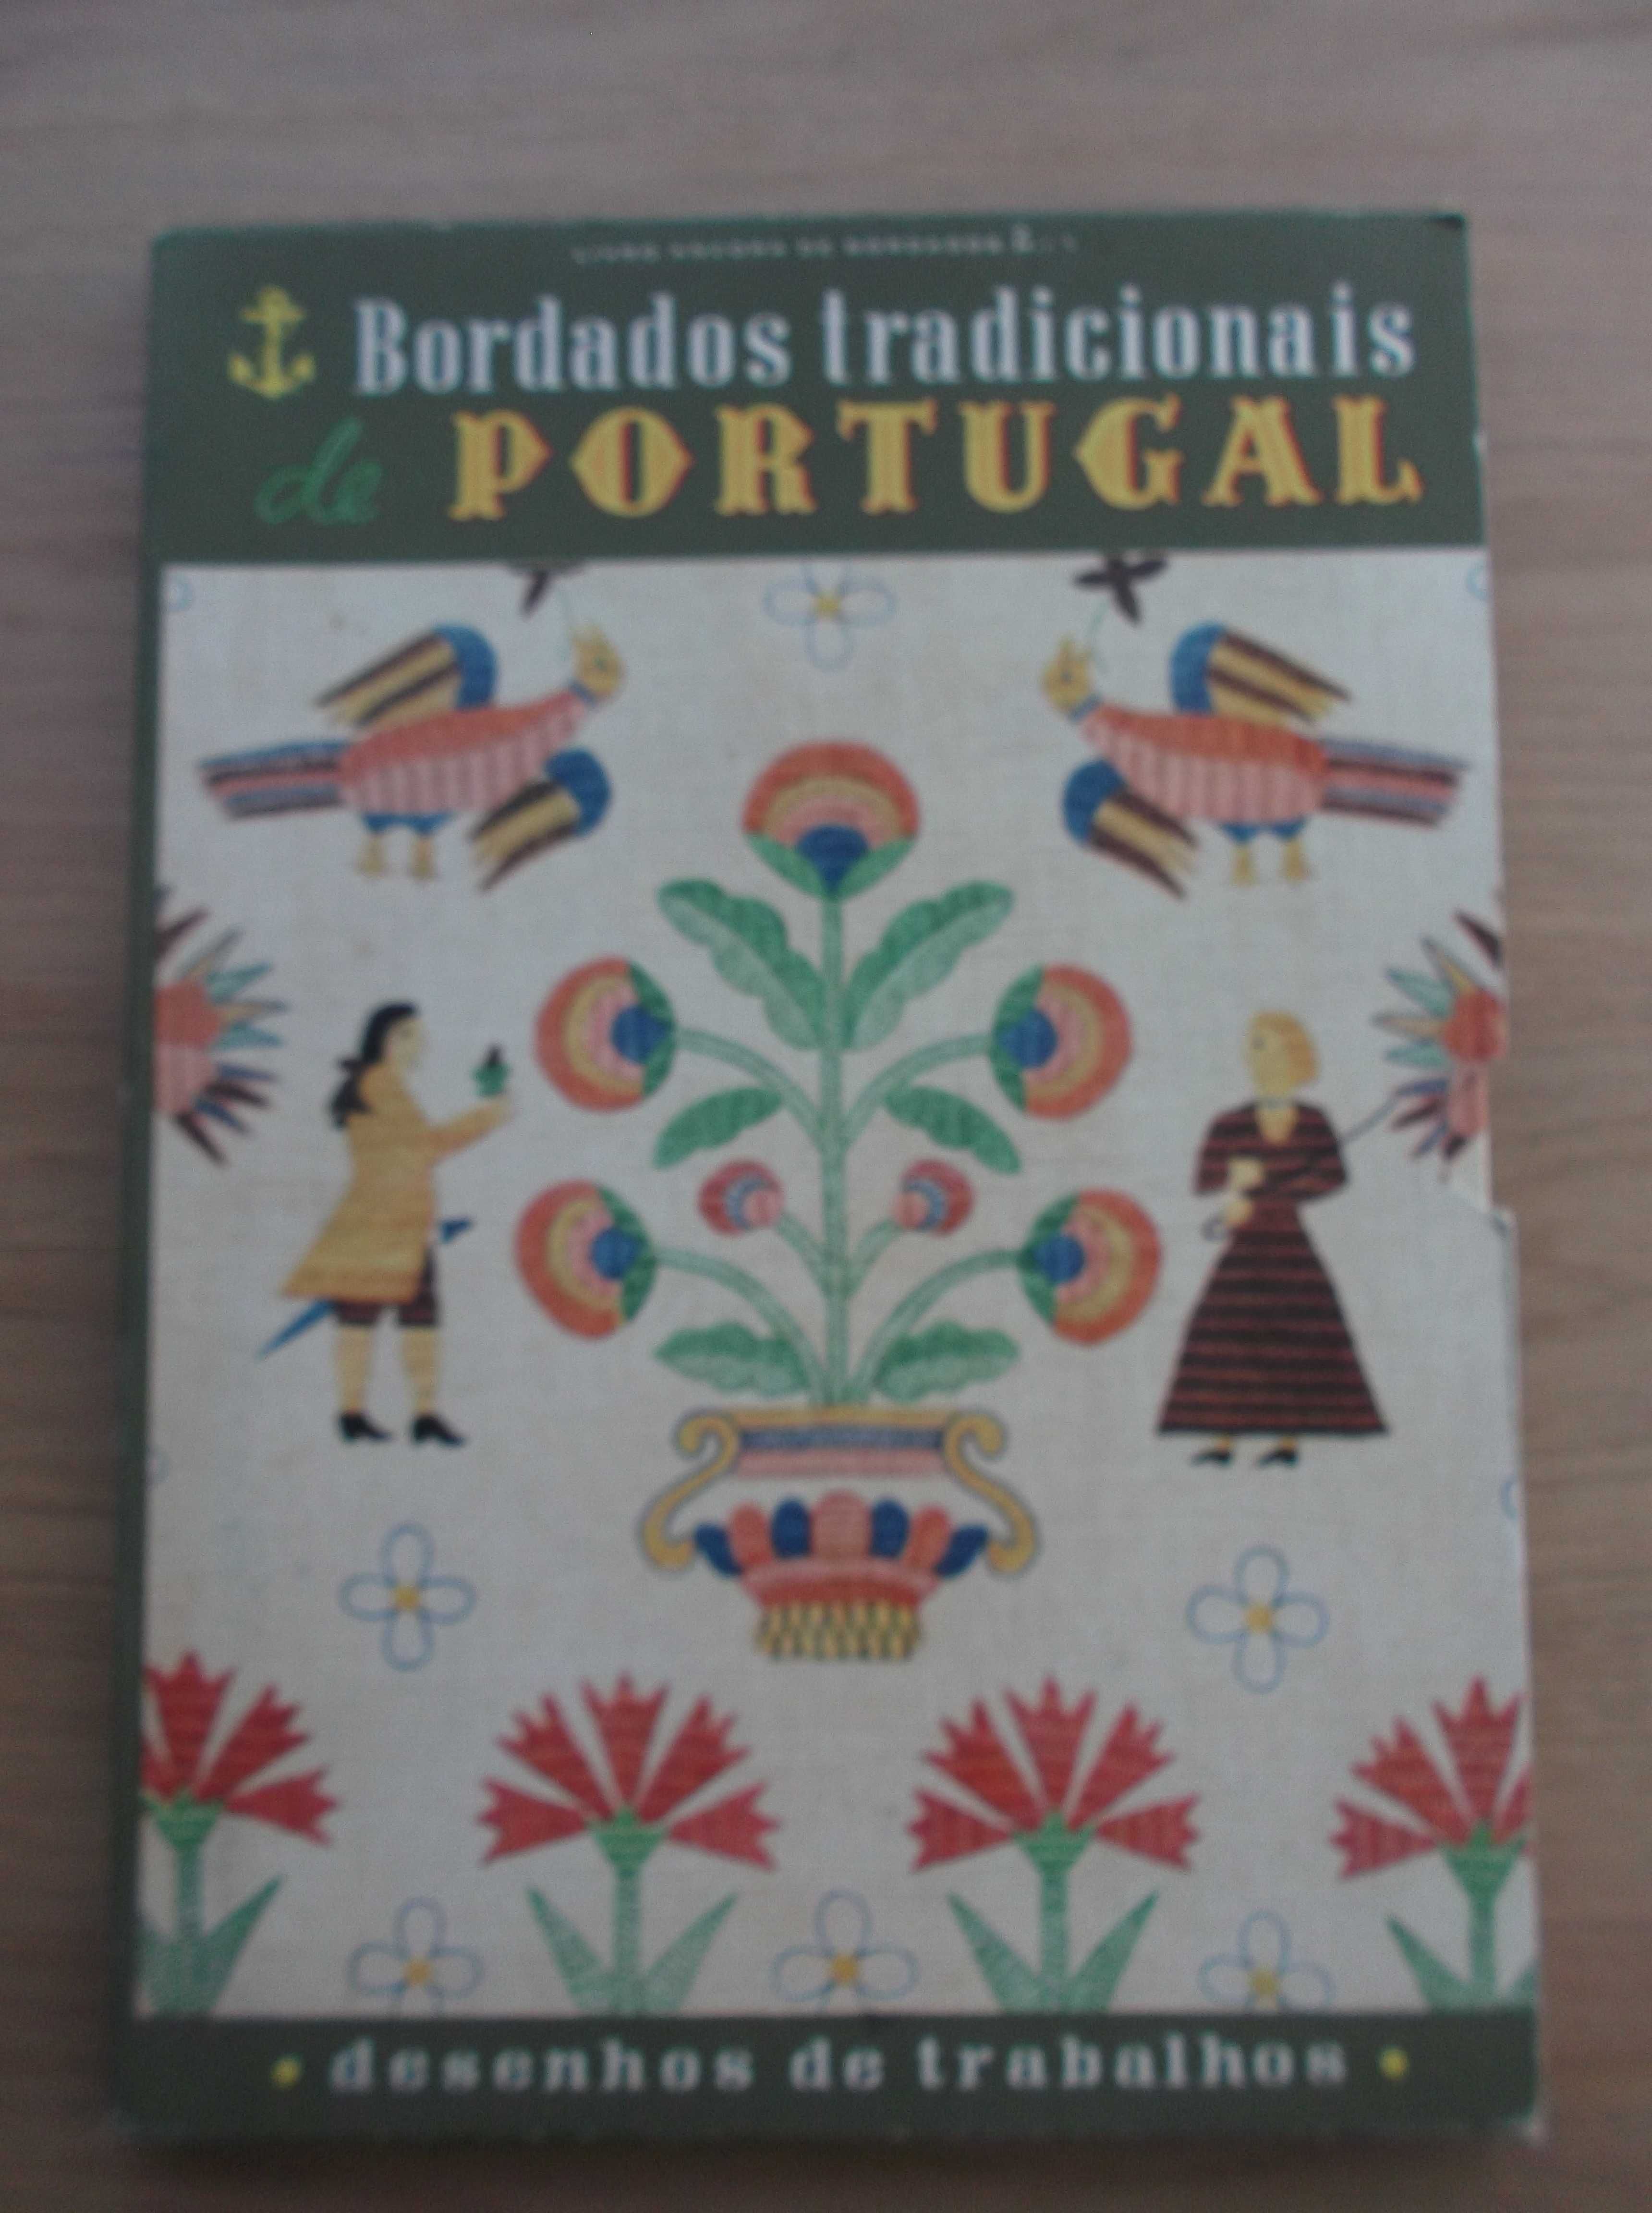 Bordados Tradicionais de Portugal - Maria Clementina Carneiro de Moura